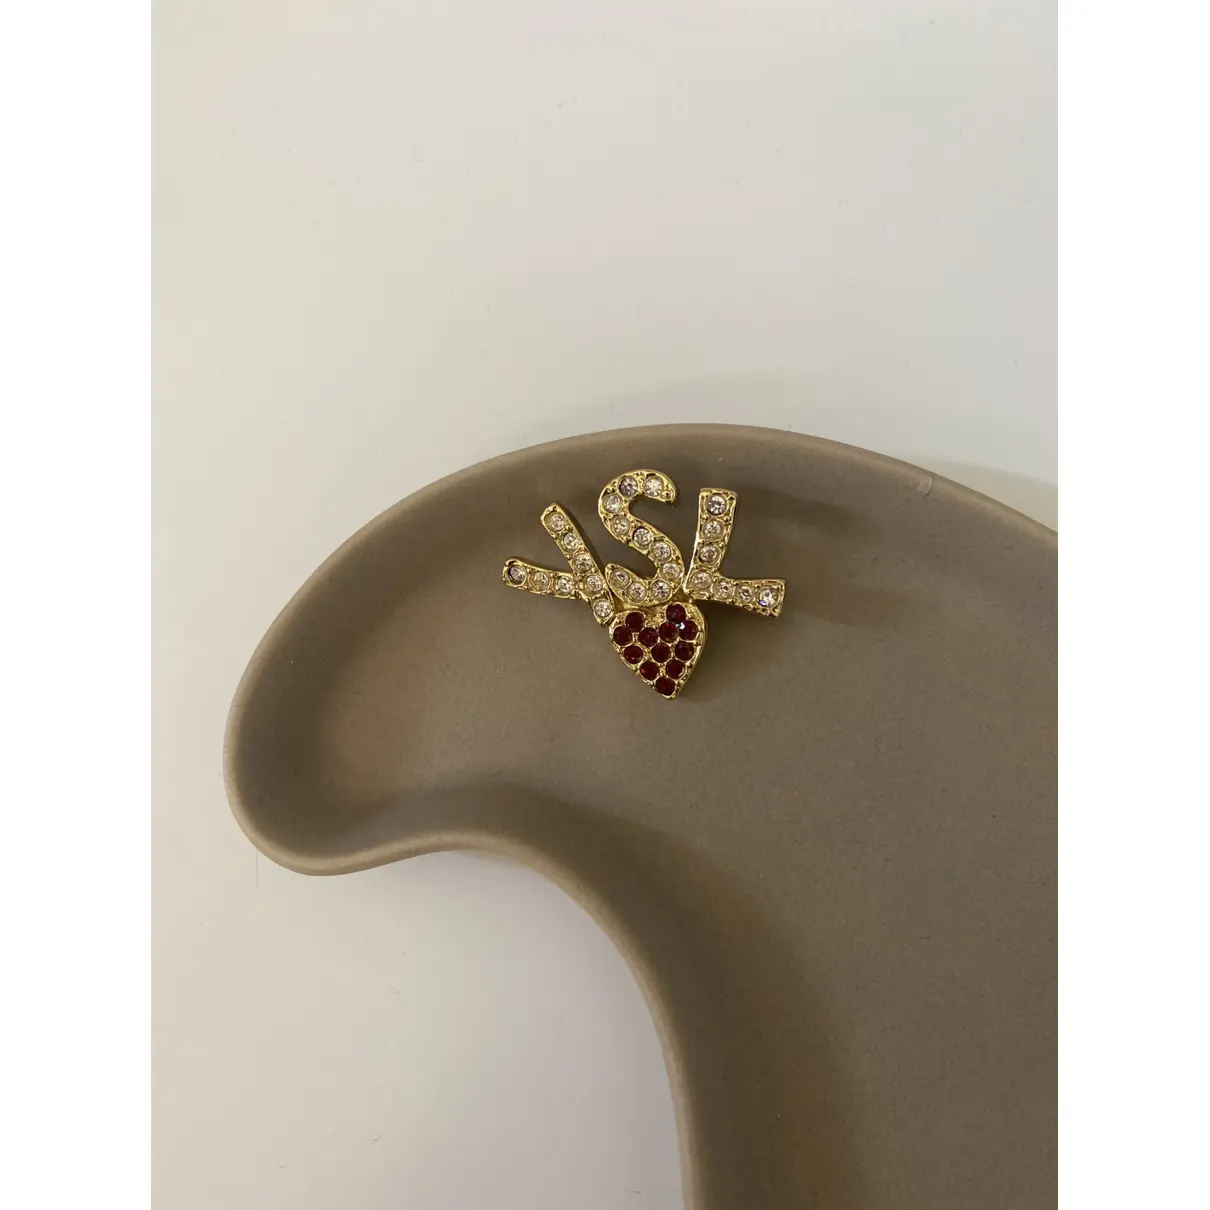 Buy Yves Saint Laurent Pin & brooche online - Vintage